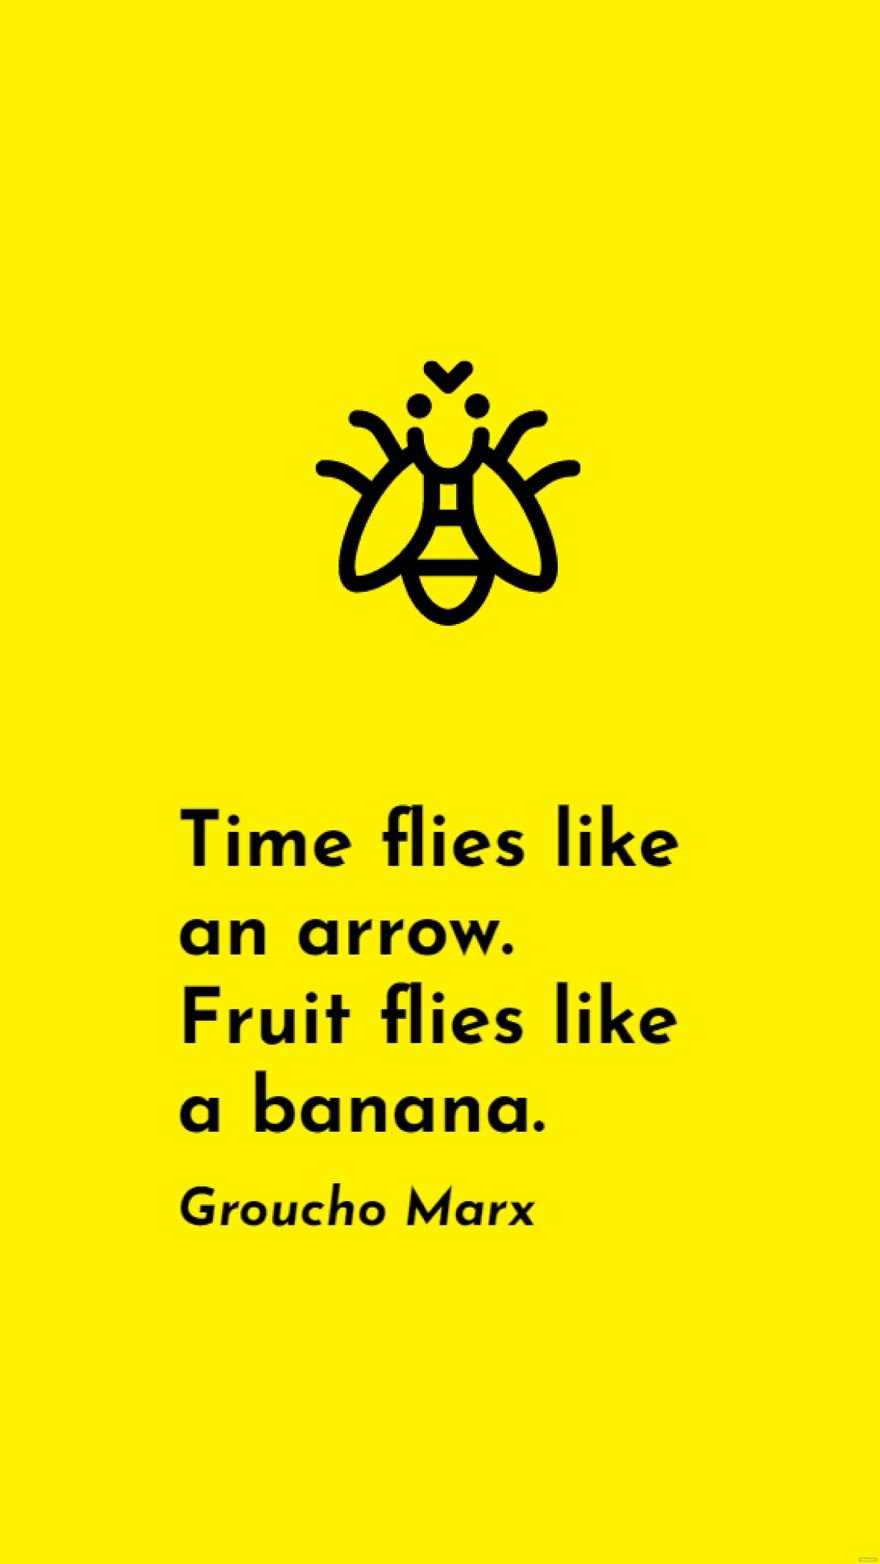 Groucho Marx - Time flies like an arrow. Fruit flies like a banana.